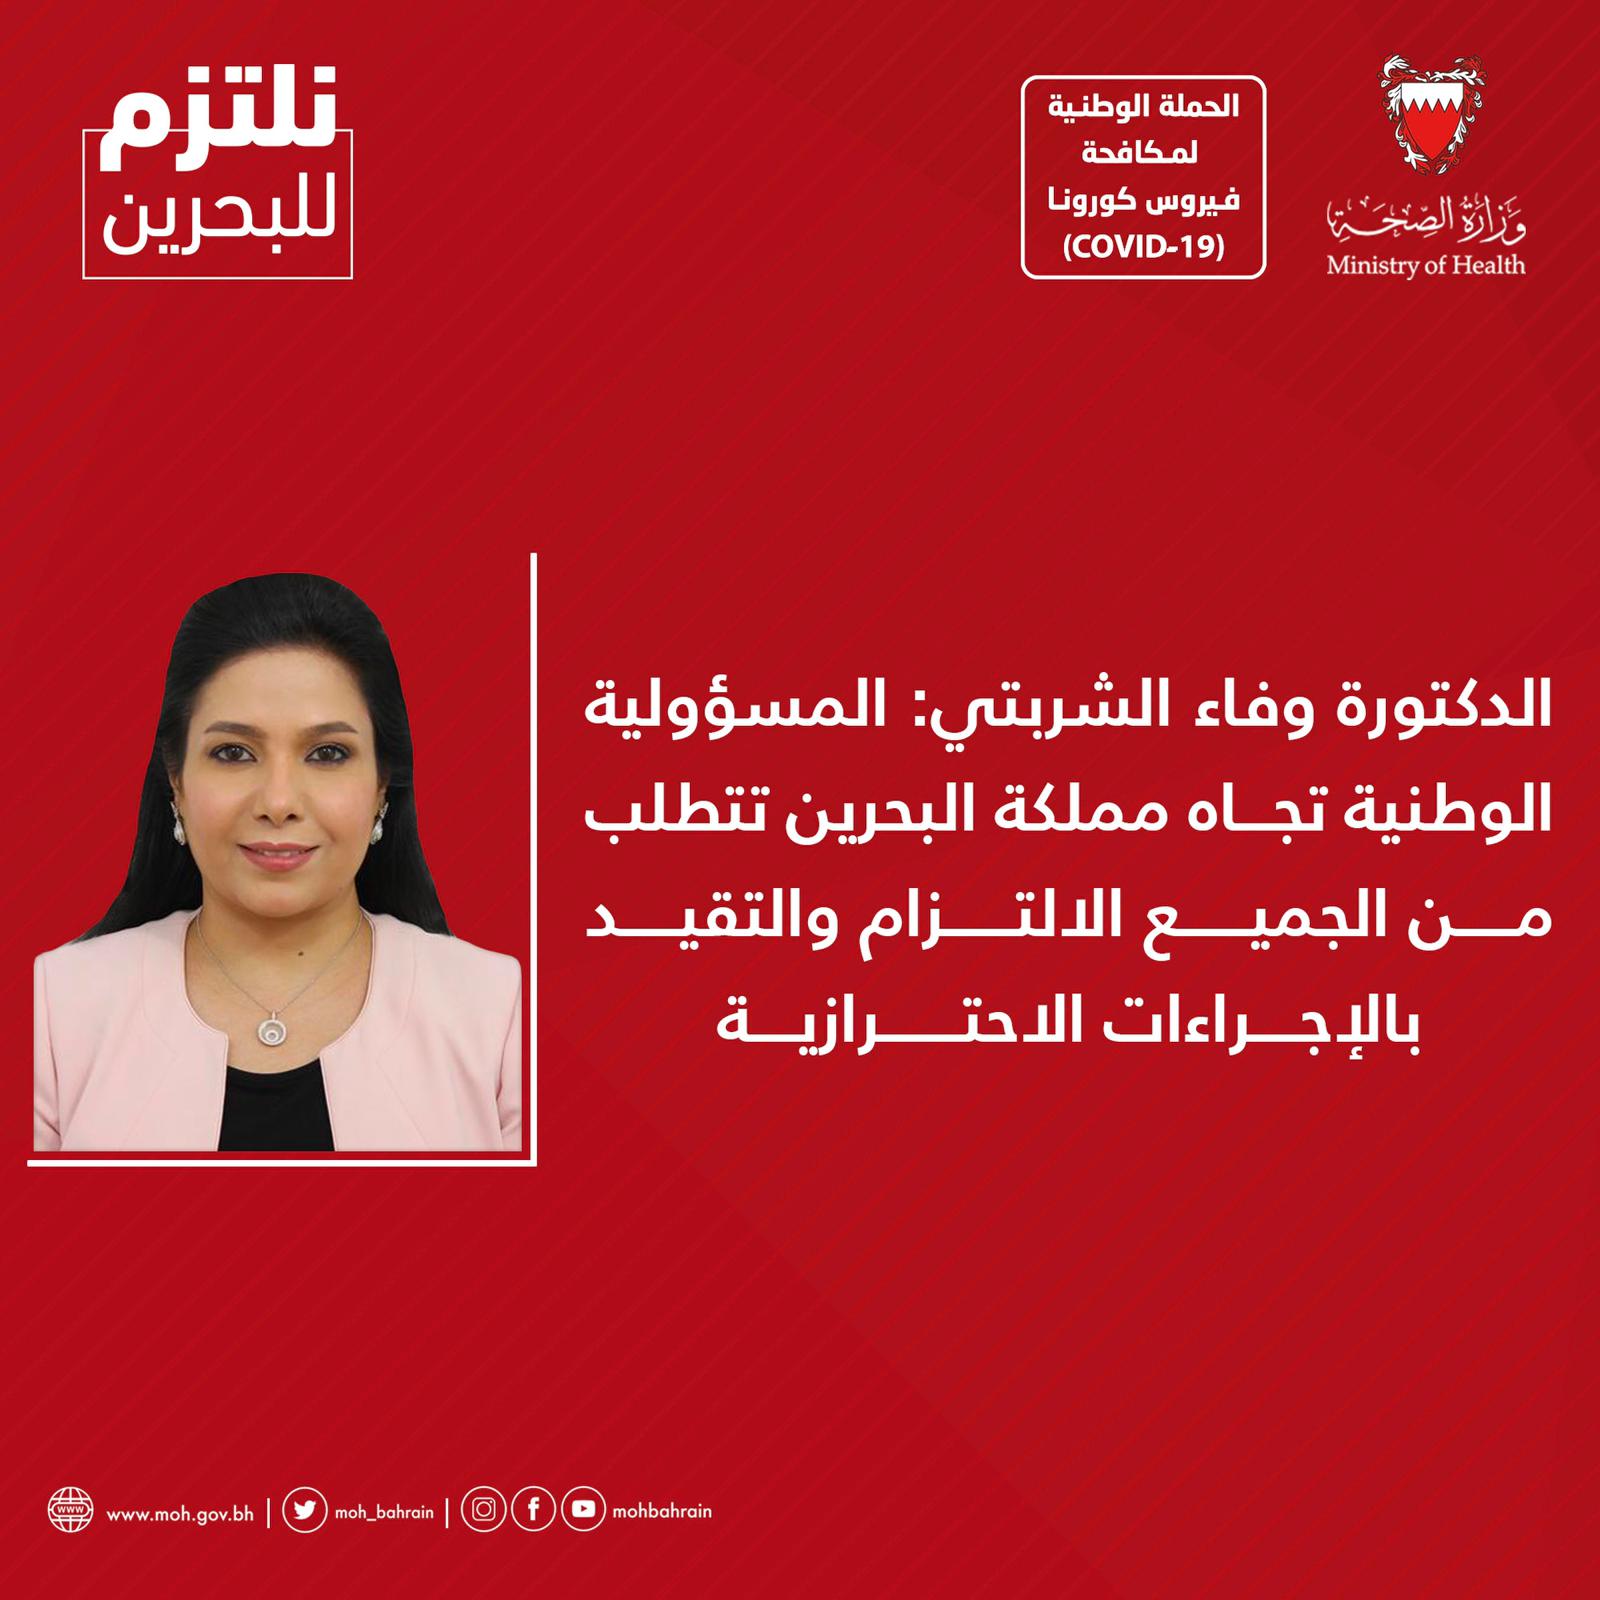 الدكتورة وفاء الشربتي: المسؤولية الوطنية تجاه مملكة البحرين تتطلب من الجميع الالتزام والتقيد بالإجراءات الاحترازية